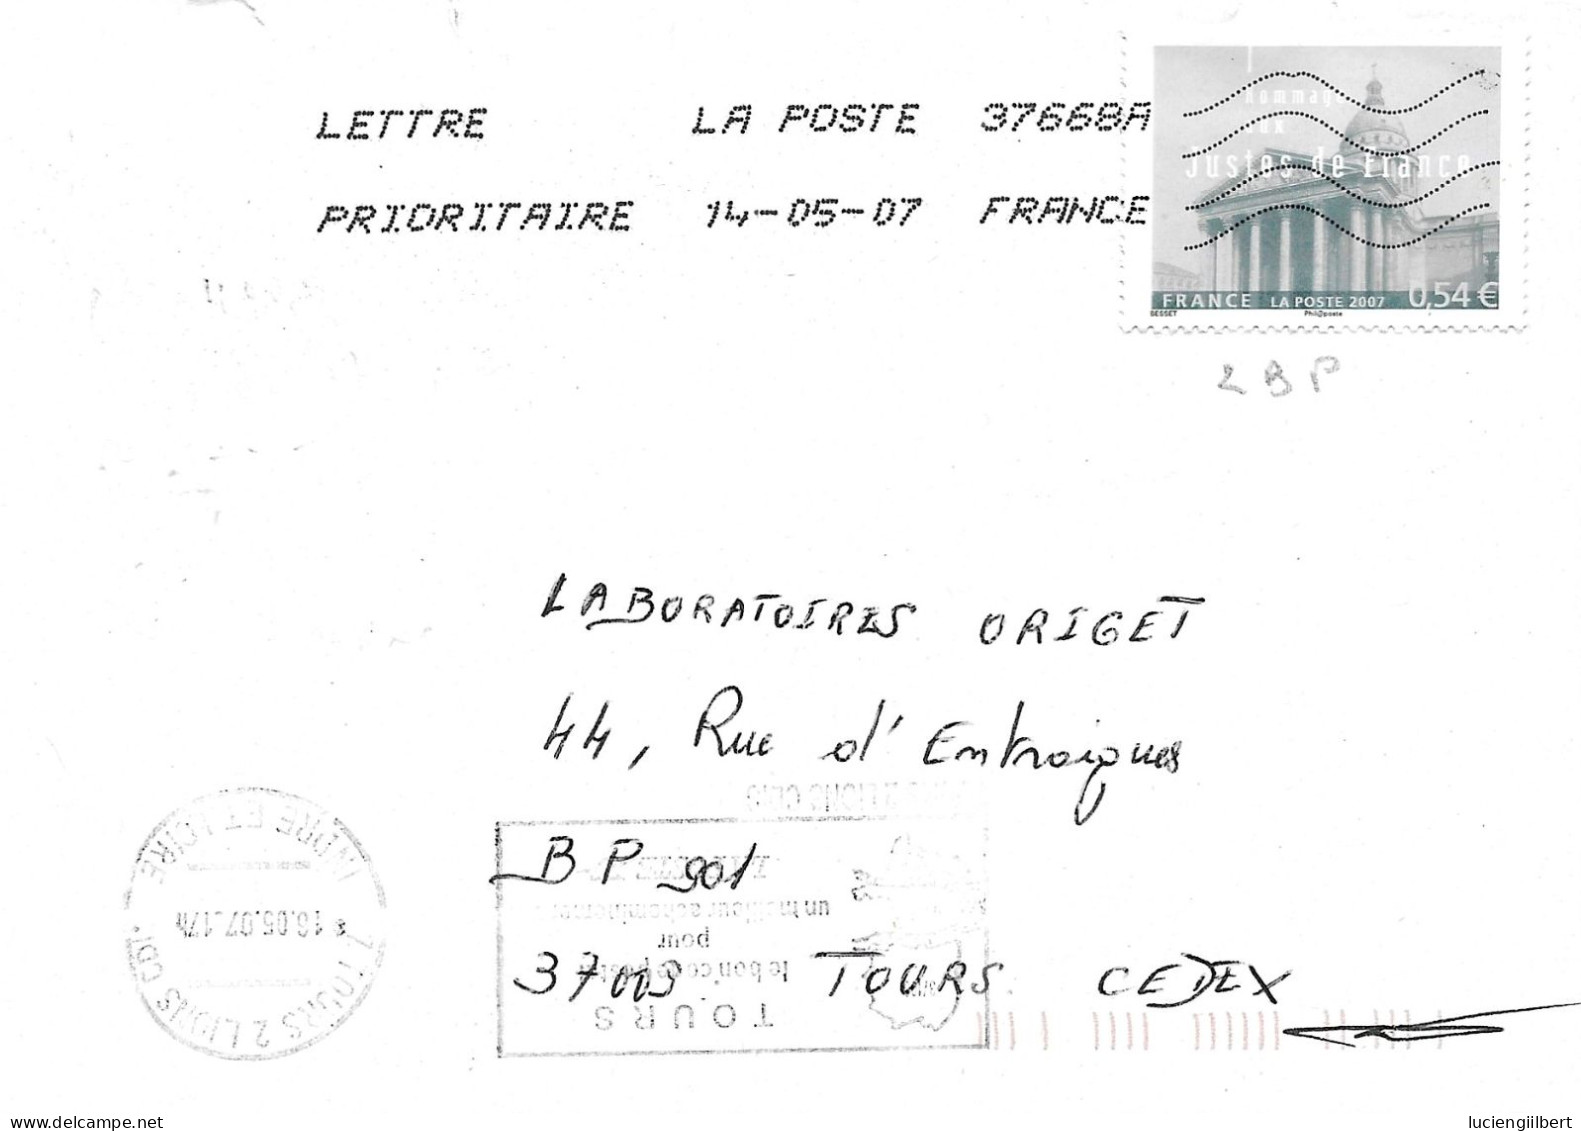 TIMBRE N° 4000   -  JUSTES DE FRANCE     - TARIF DU 1 10 06 AU 28 2 08  -  SEUL SUR LETTRE - 2007 - Tarifs Postaux